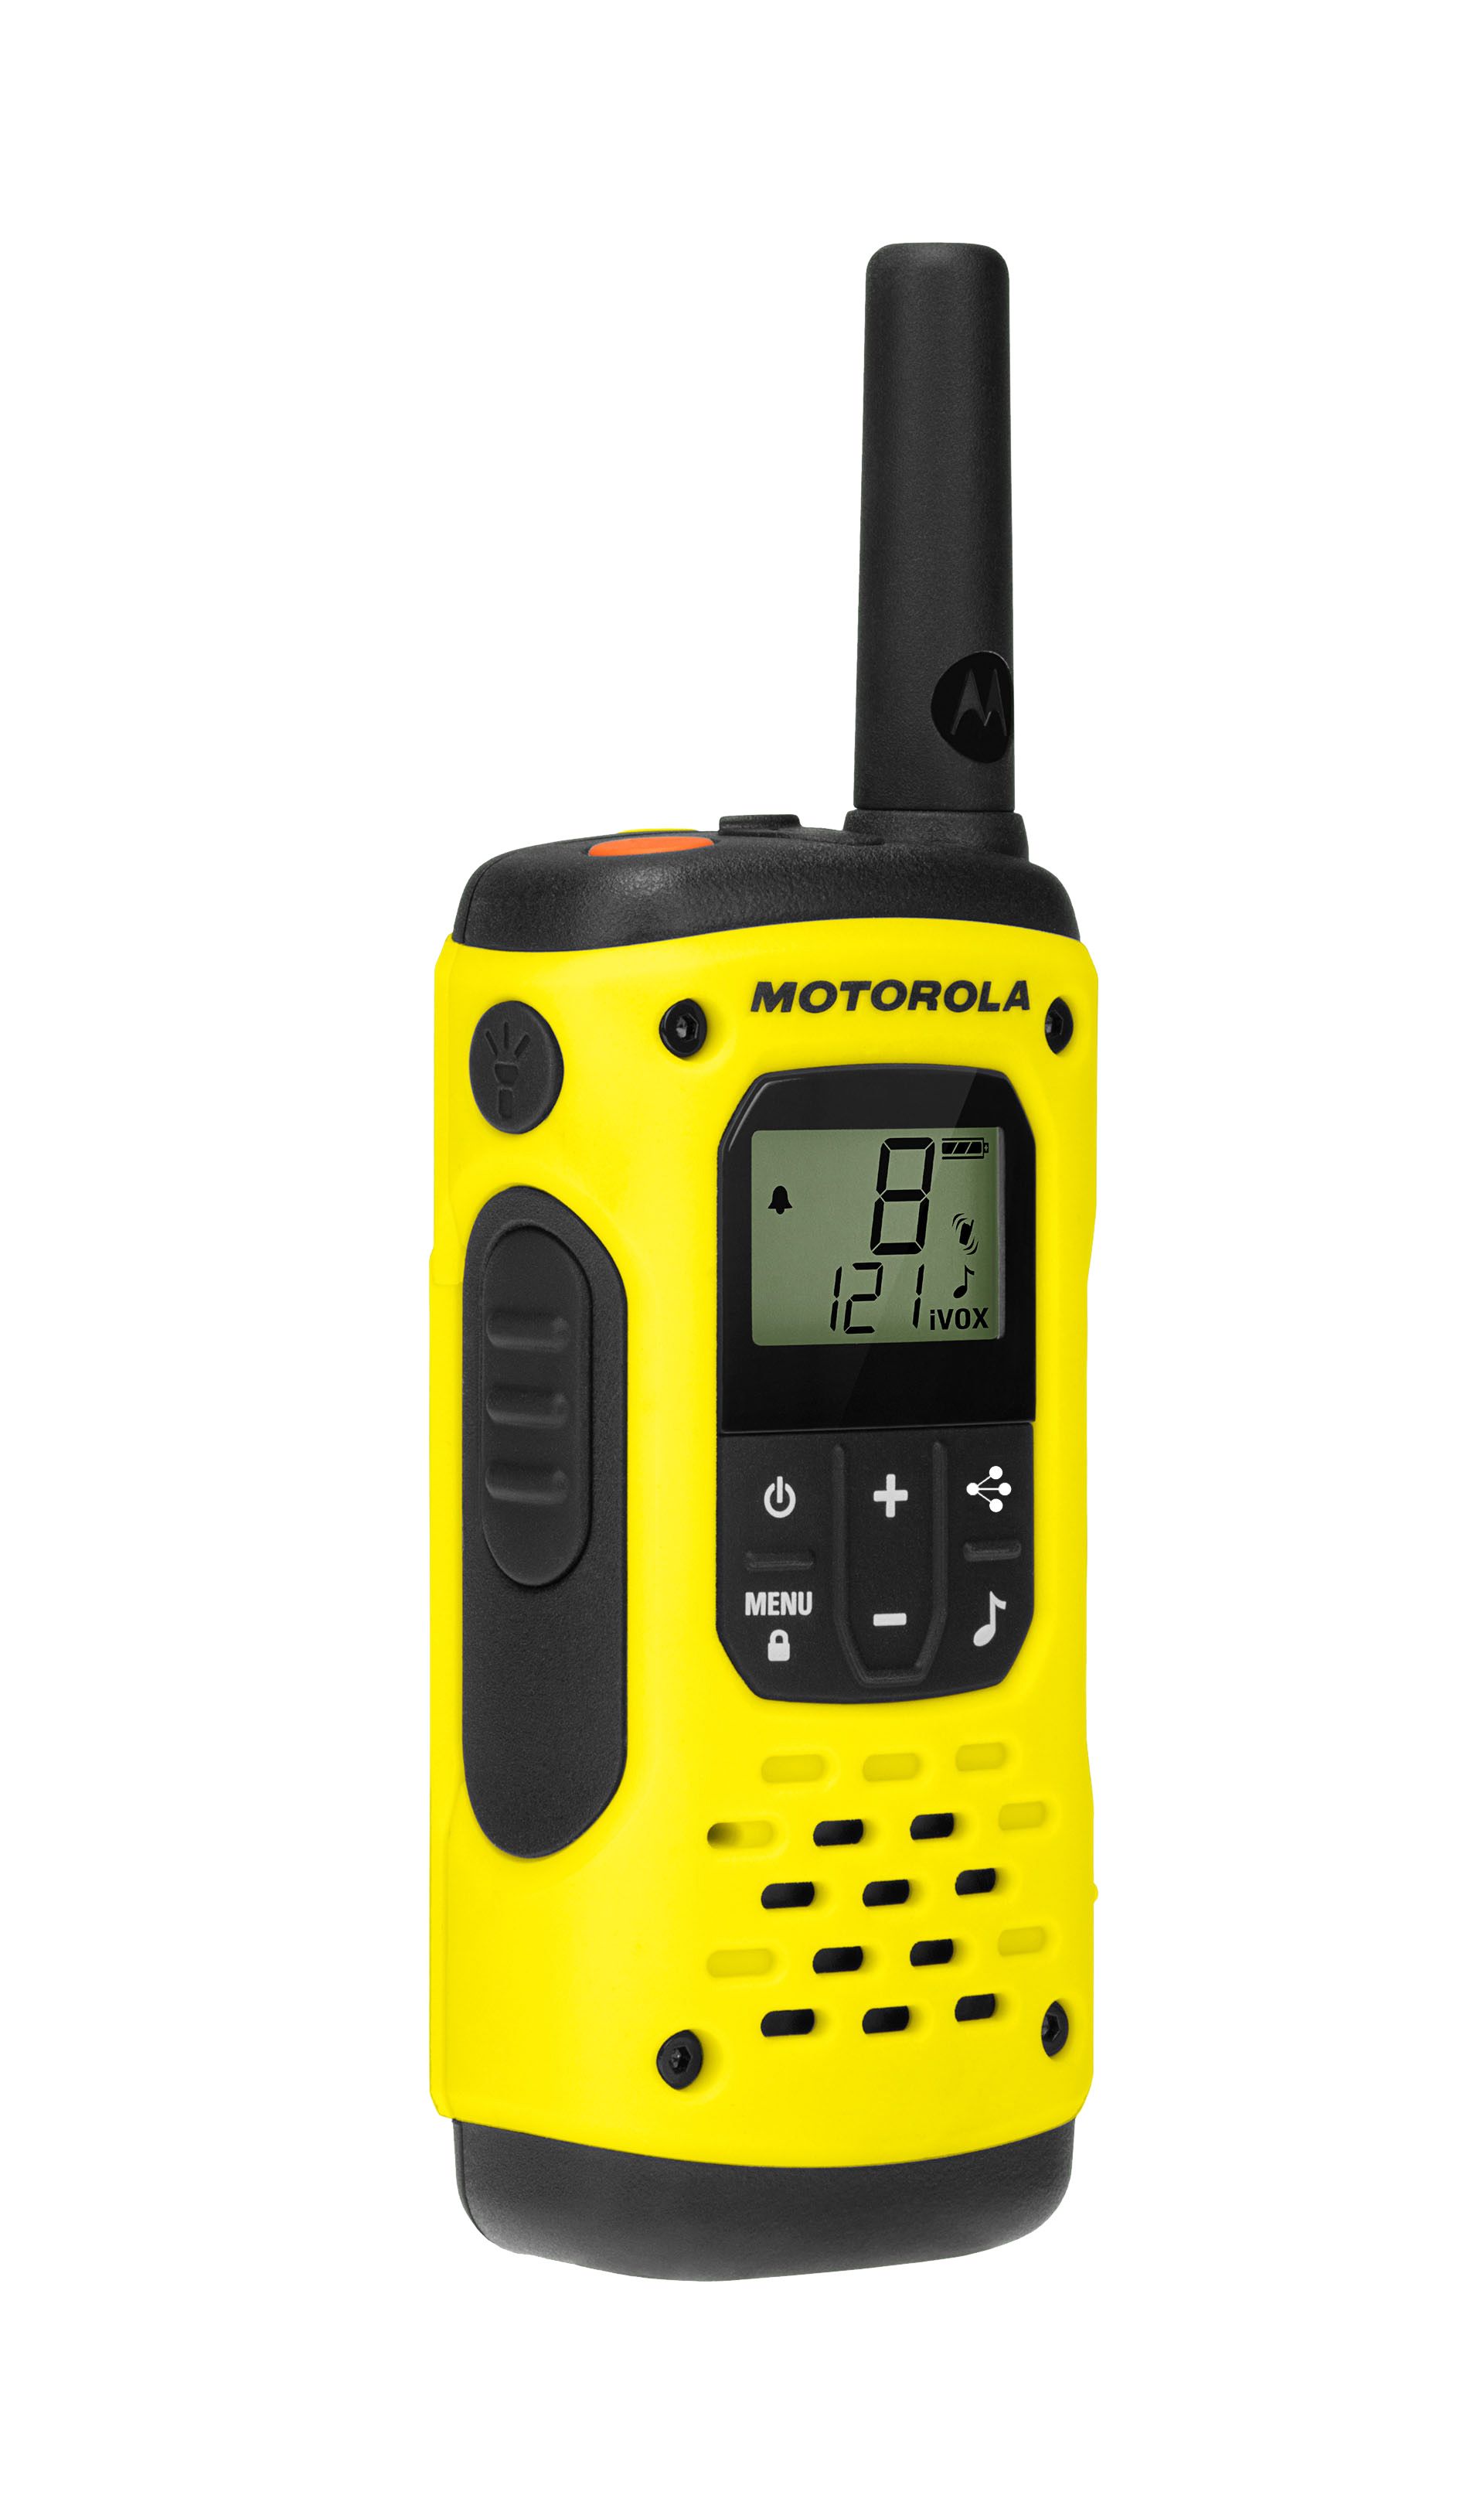 Motorola T5920 Radios & Accessories